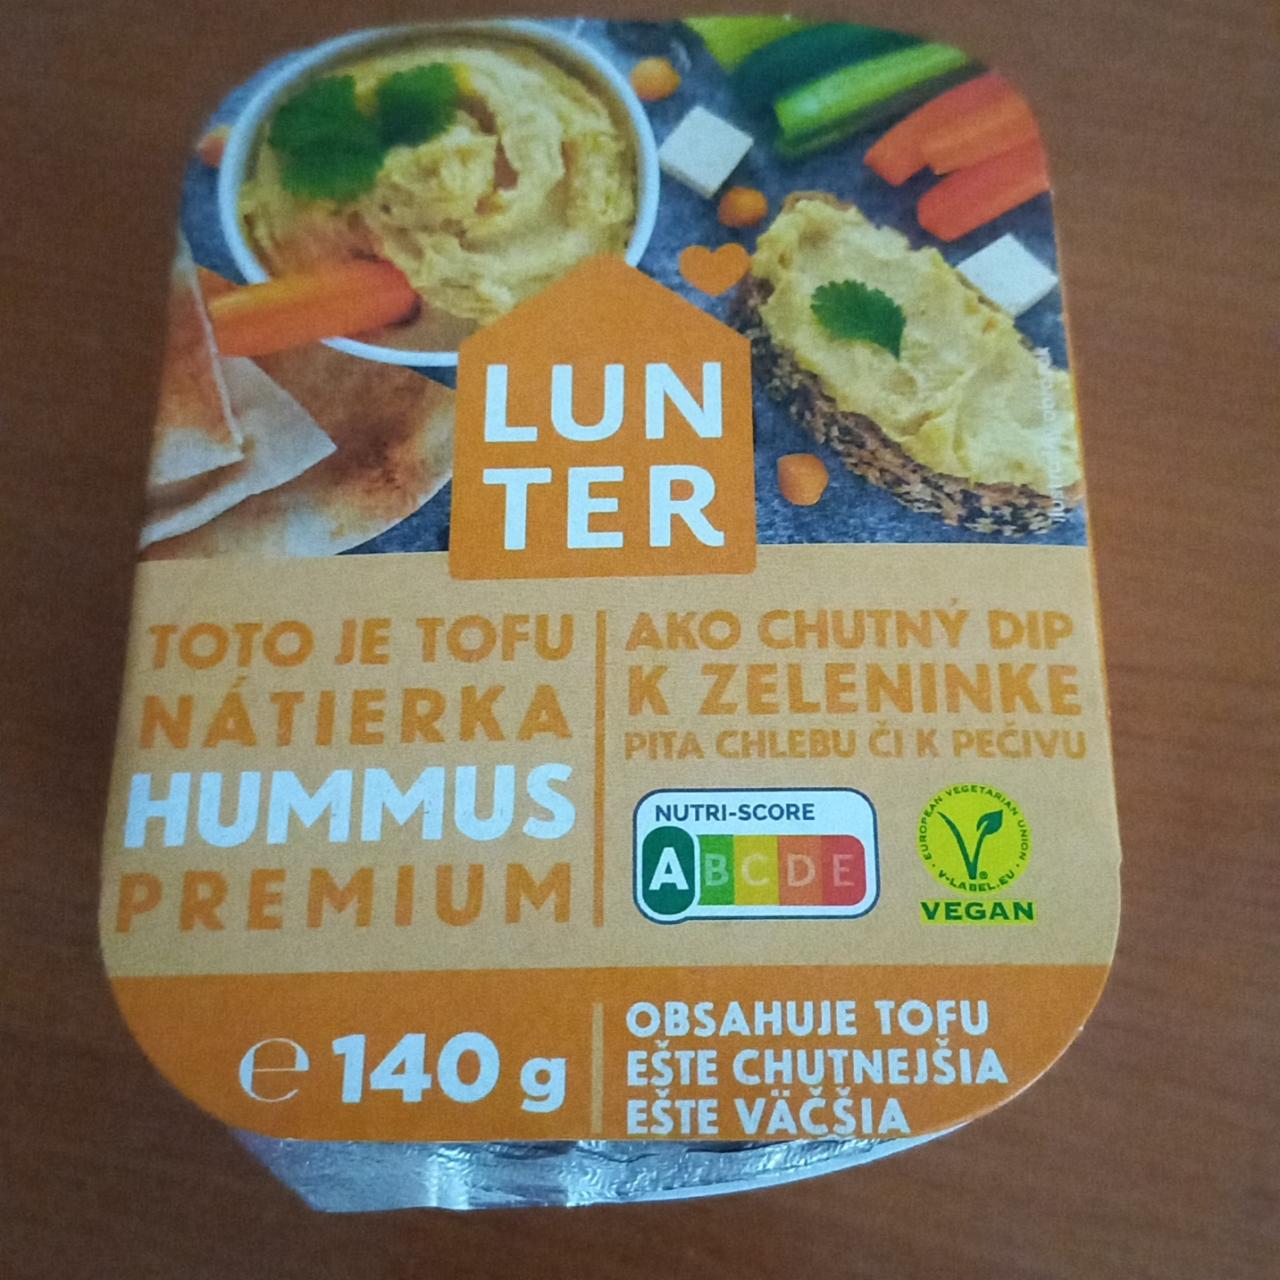 Фото - Tofu nátierka hummus premium Lunter